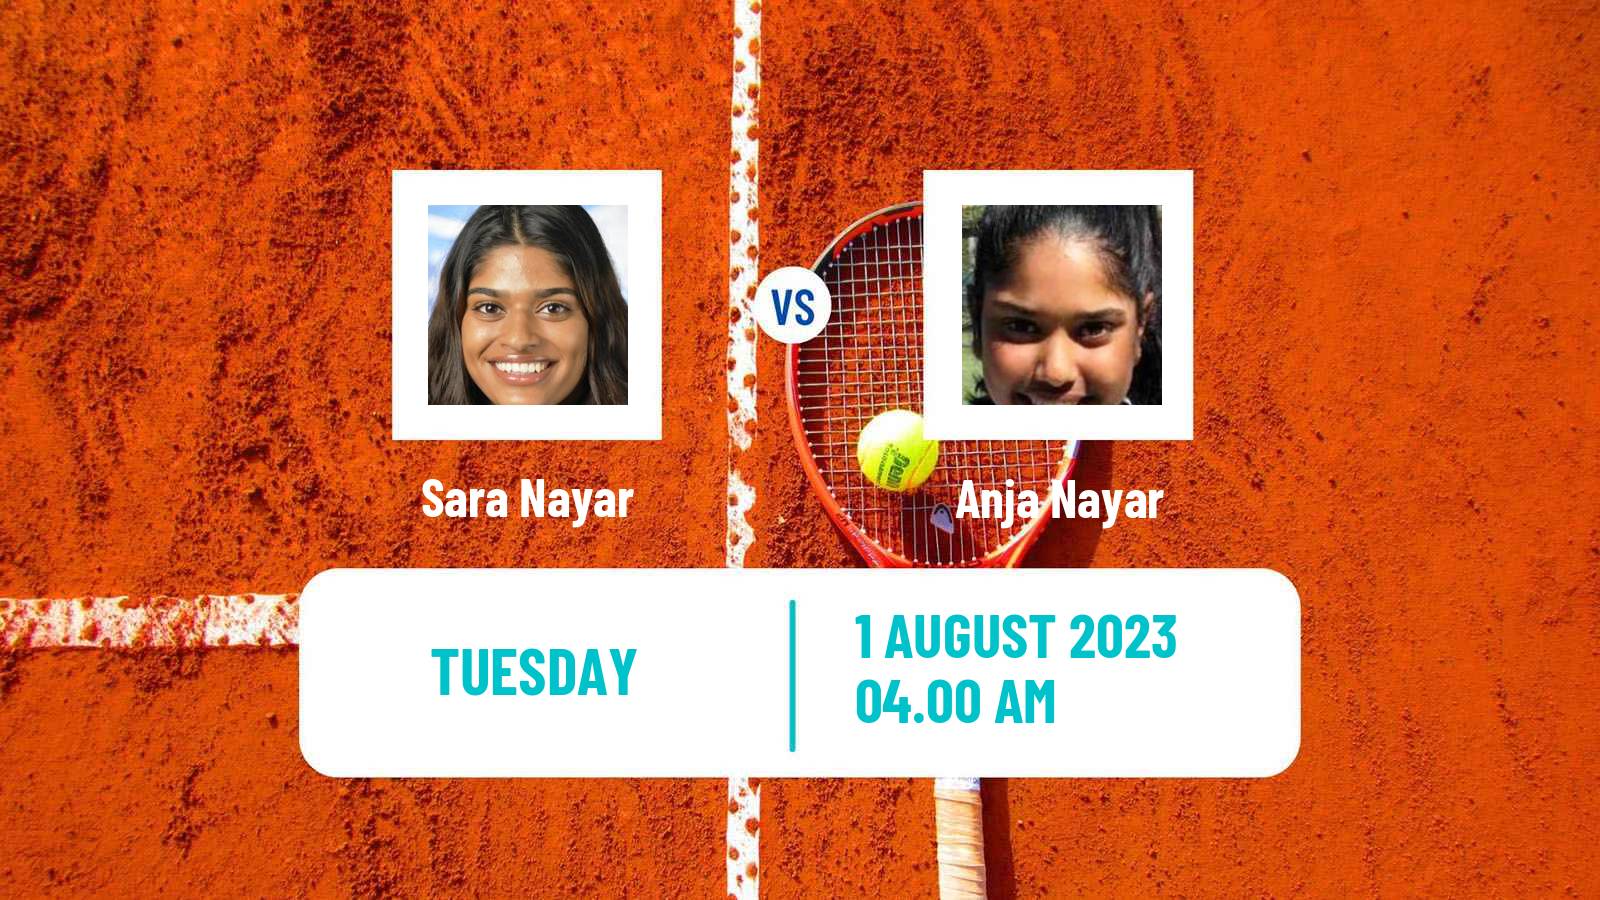 Tennis ITF W15 Caloundra 3 Women 2023 Sara Nayar - Anja Nayar